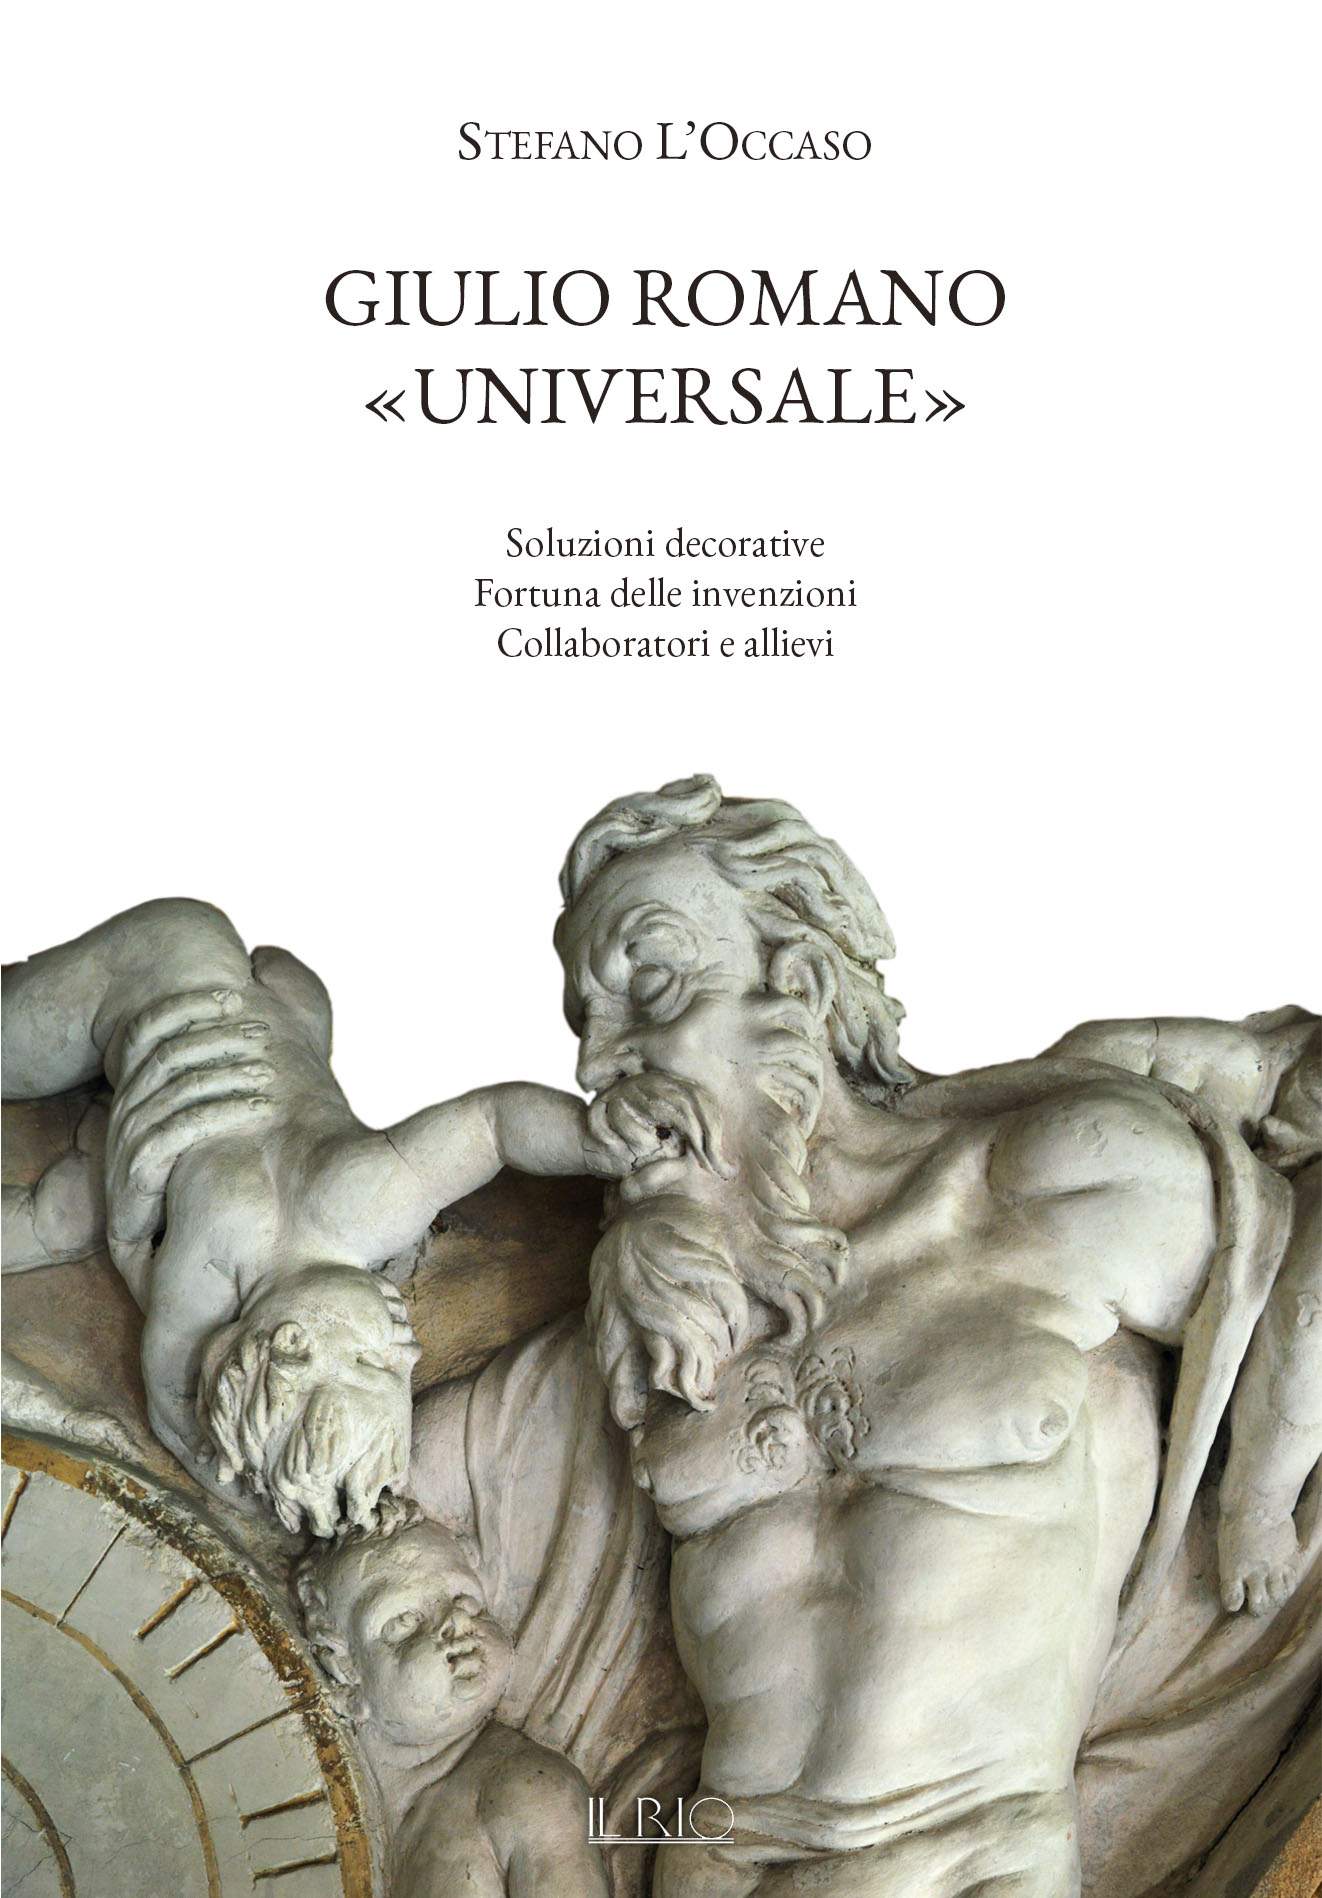 Nouveautés et aspects inédits sur Giulio Romano à Mantoue dans le nouveau livre de Stefano L'Occaso 